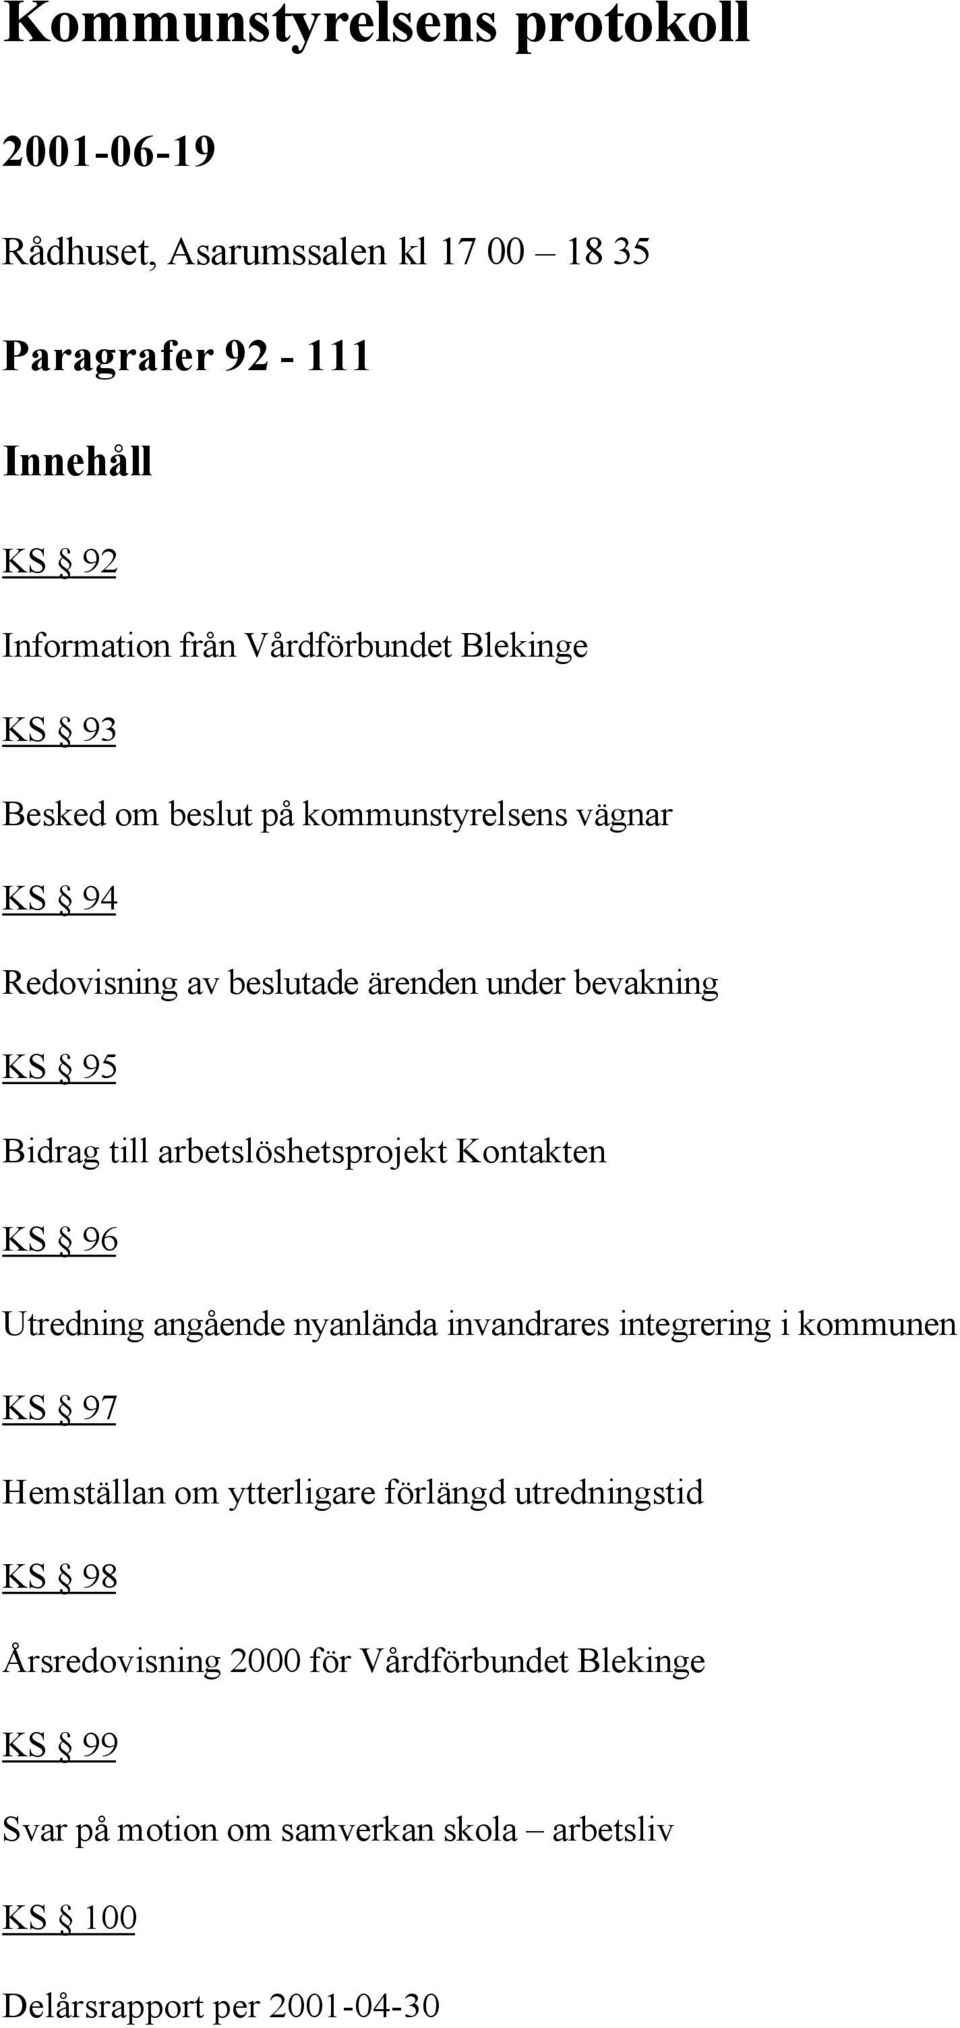 arbetslöshetsprojekt Kontakten KS 96 Utredning angående nyanlända invandrares integrering i kommunen KS 97 Hemställan om ytterligare förlängd